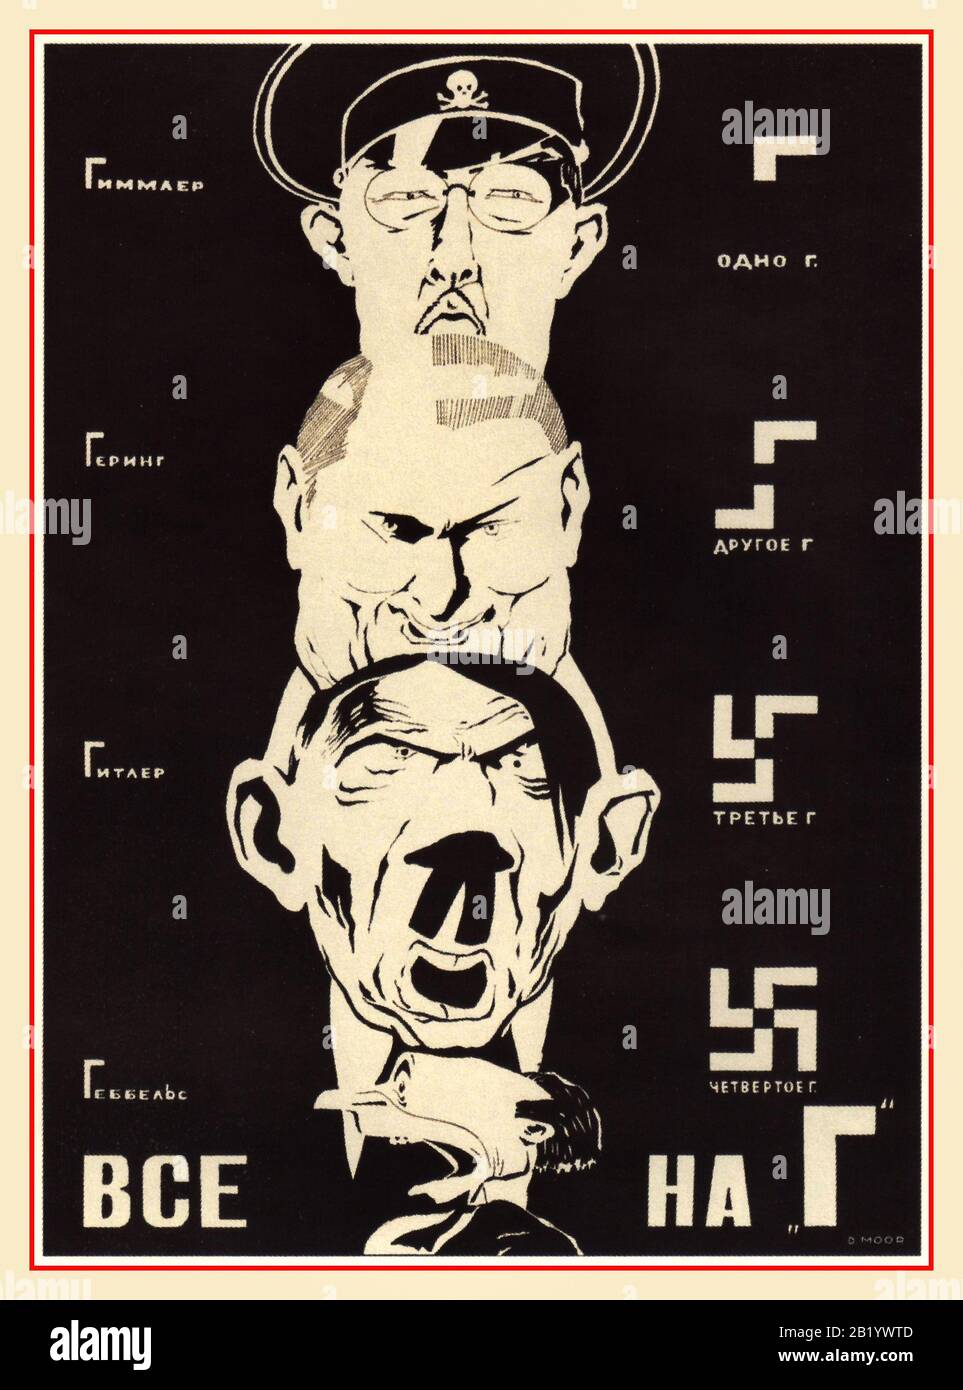 Poster d'arte anti nazista di Propaganda Russa degli anni '40 con Top, HIMMLER, GOERING, HITLER, GOEBBELS, caricature cartoon dei principali membri del Partito nazista, con parodia offensivo sui loro nomi. Foto Stock